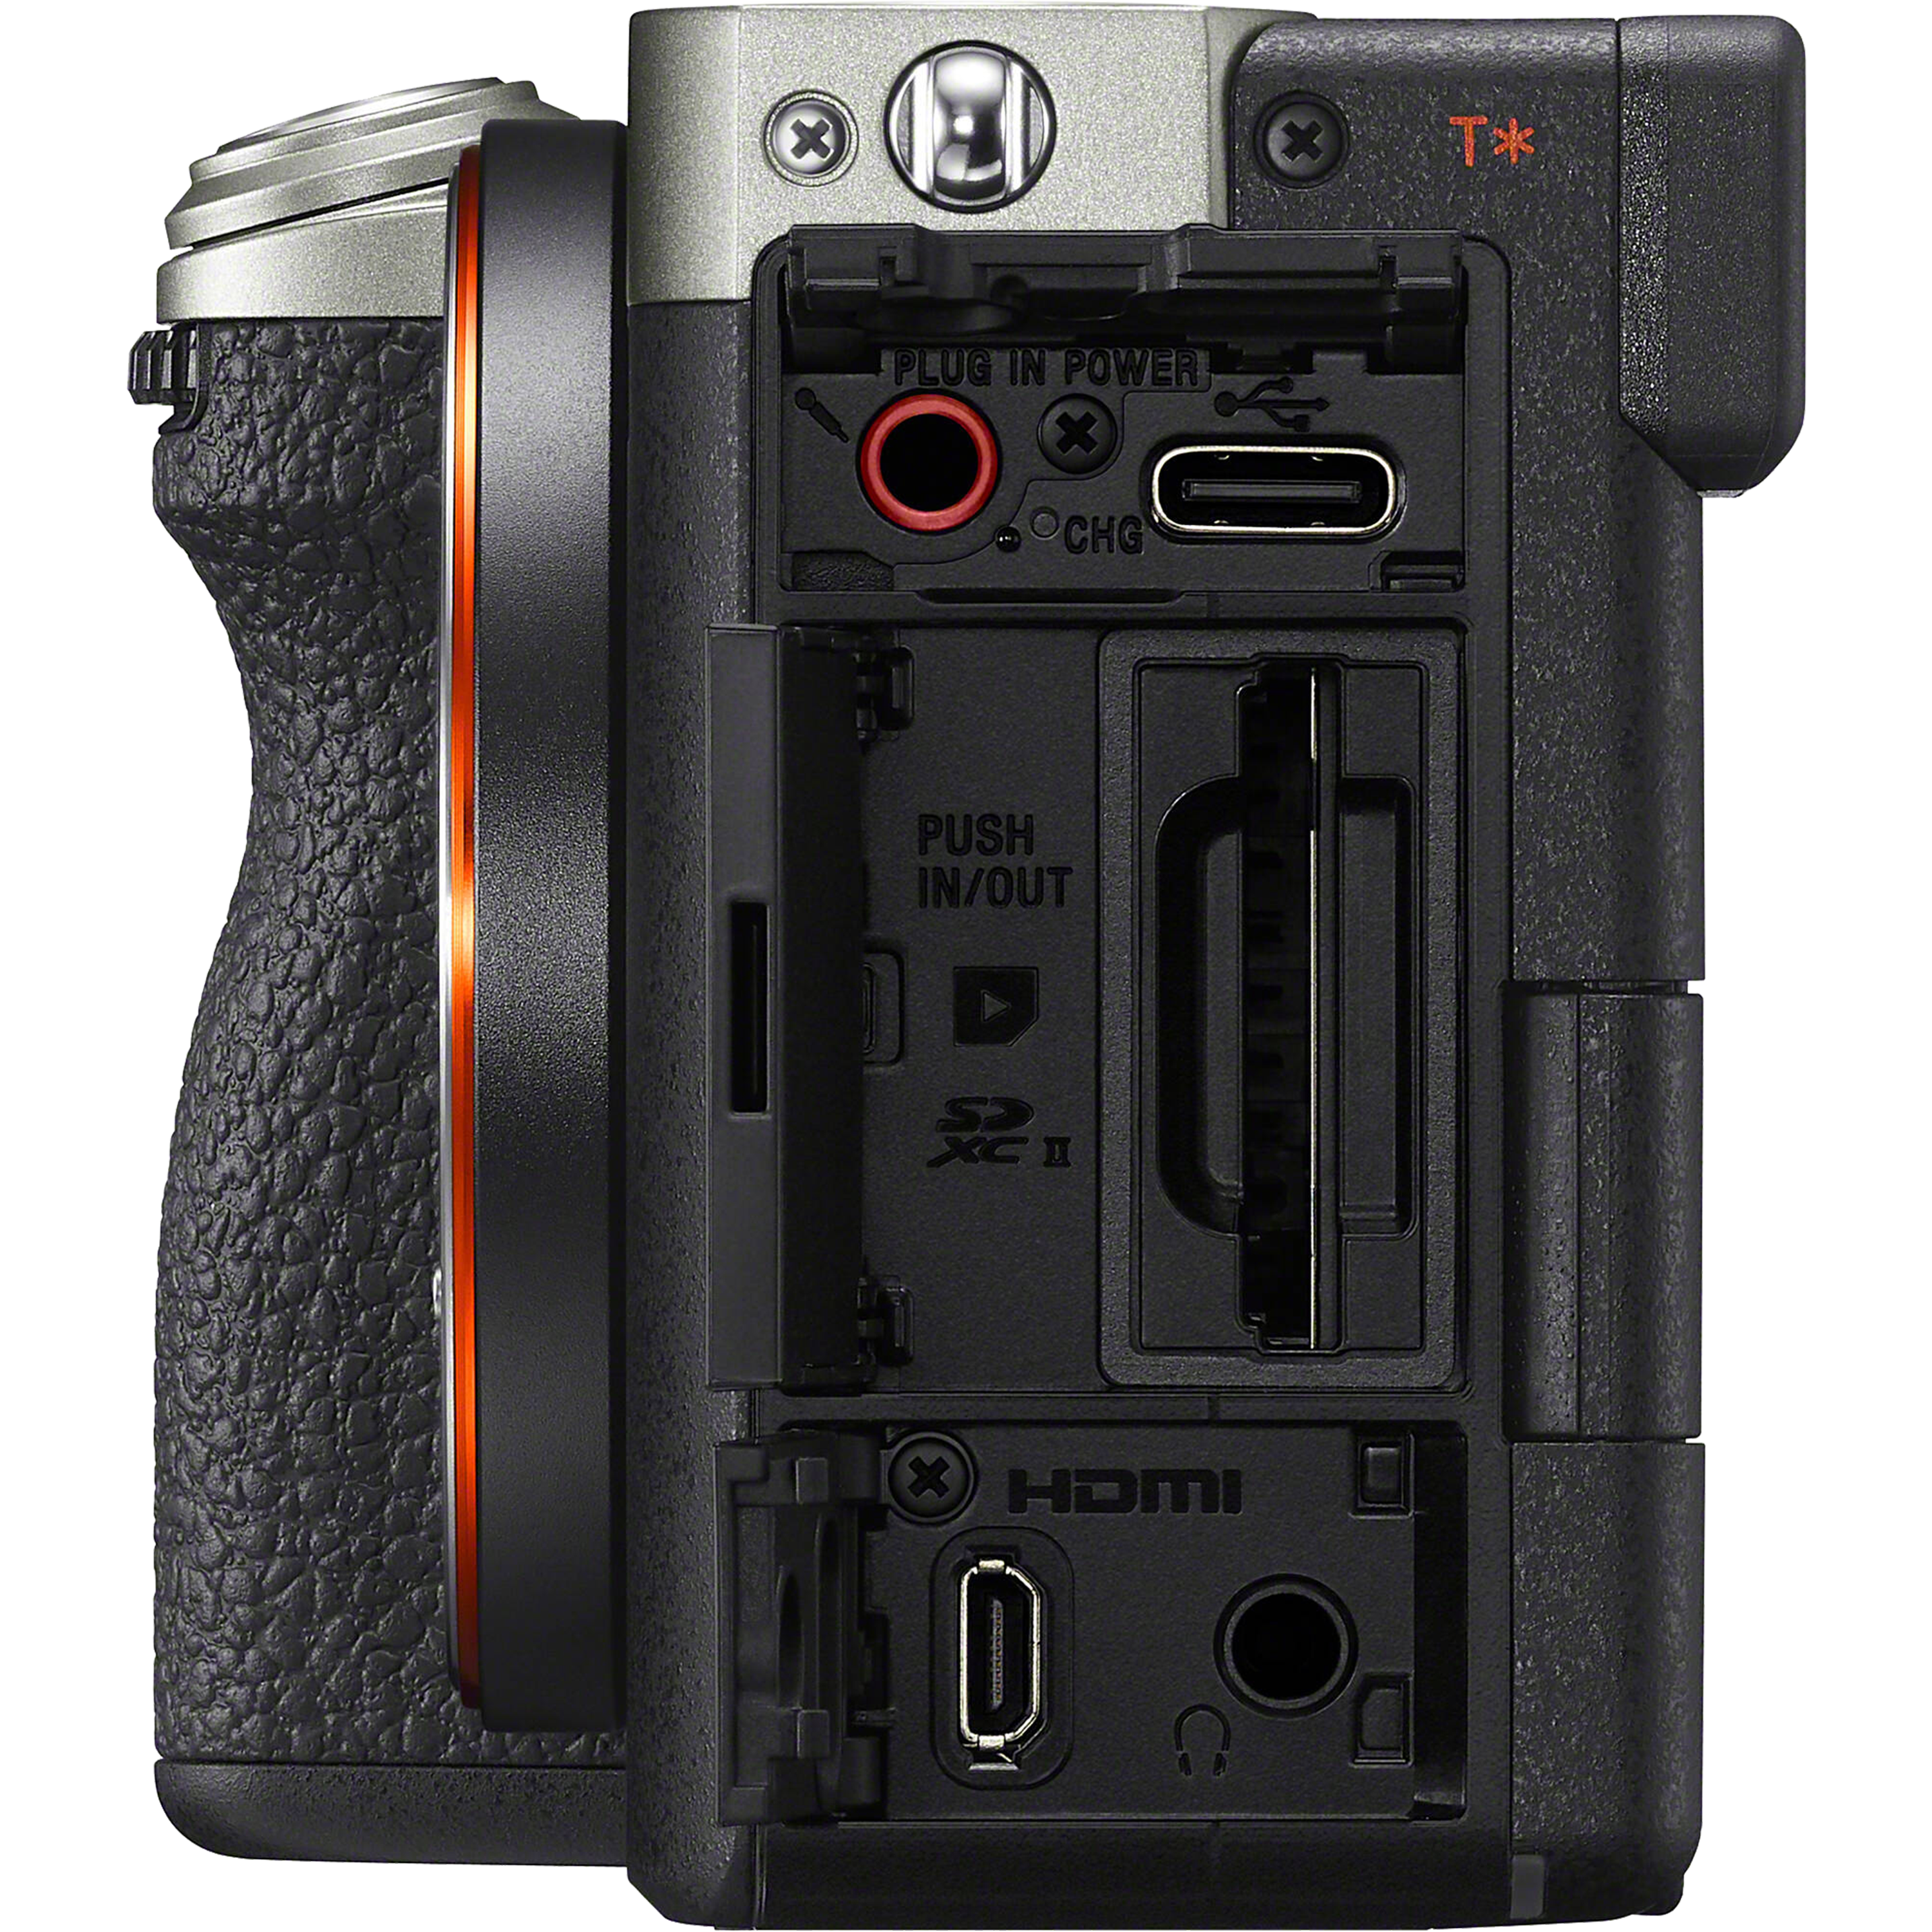 מצלמה דיגיטלית ללא מראה הכוללת עדשה Sony Alpha 7C II FE 28-60mm f/4-5.6 - צבע כסוף שלוש שנות אחריות ע